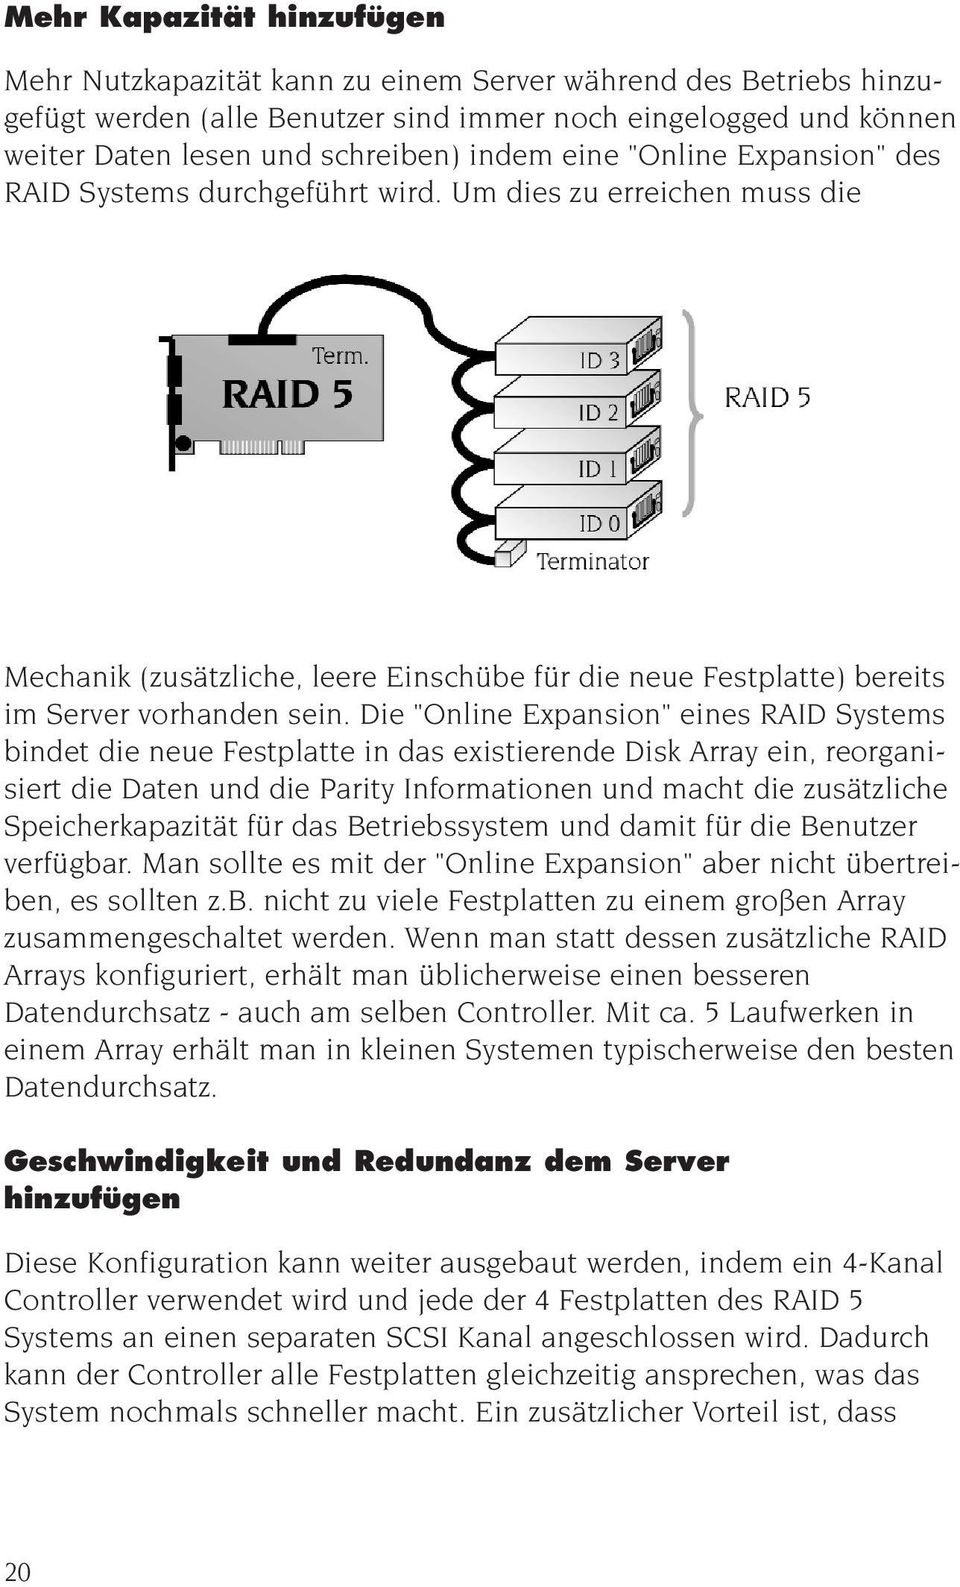 Die "Online Expansion" eines RAID Systems bindet die neue Festplatte in das existierende Disk Array ein, reorganisiert die Daten und die Parity Informationen und macht die zusätzliche